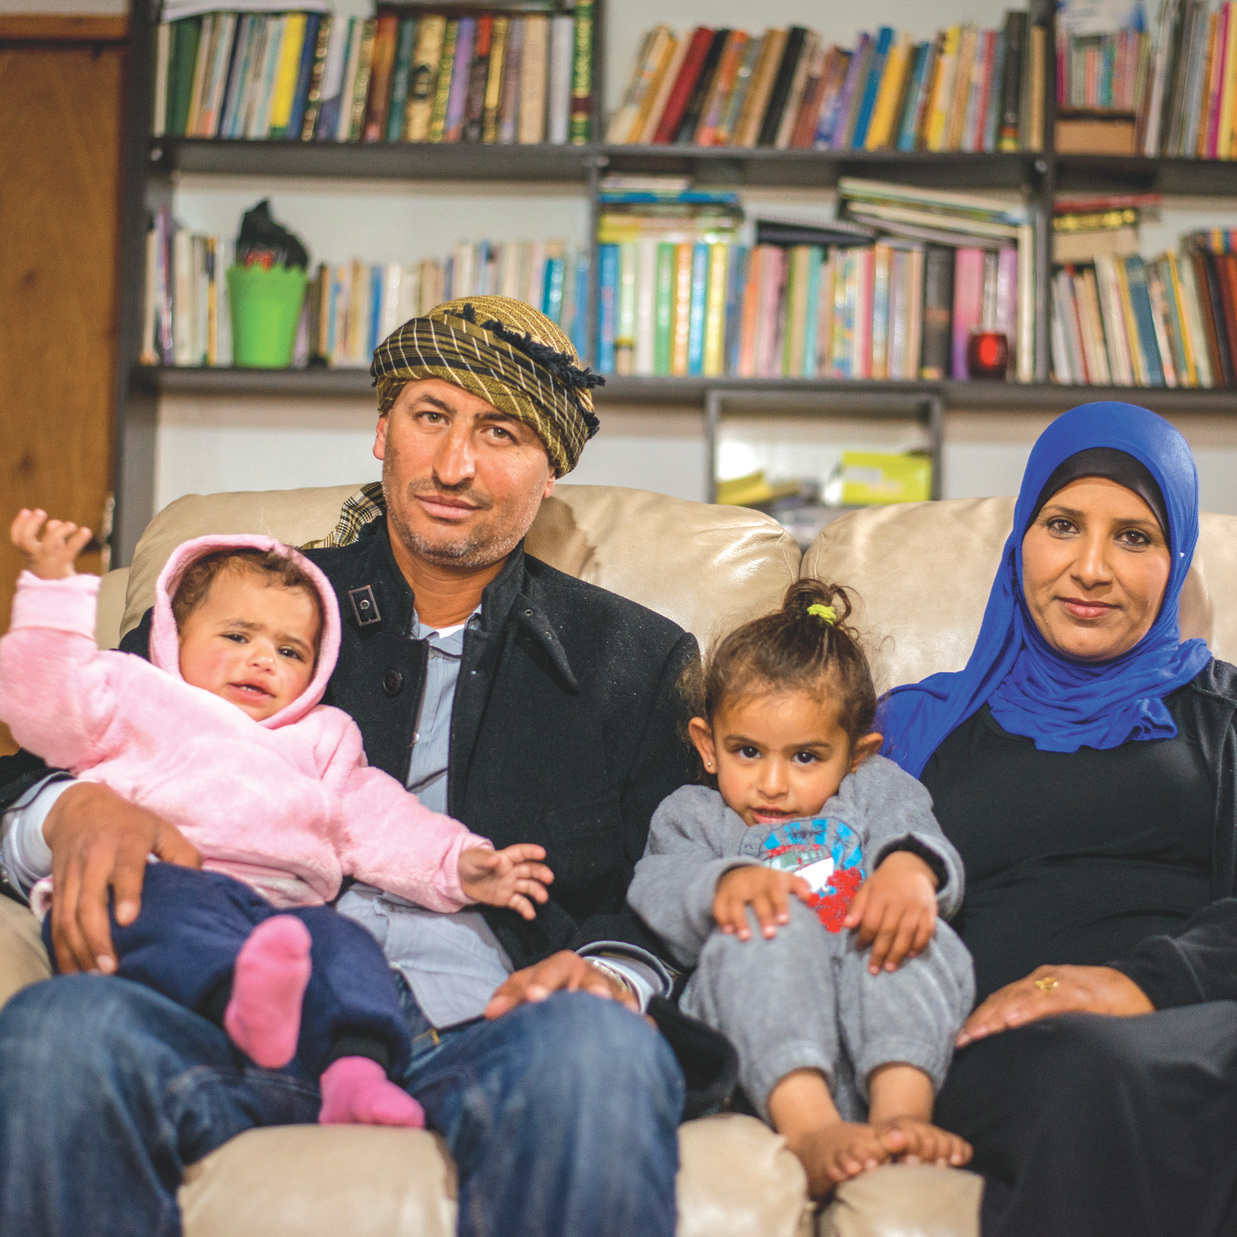 מרים וראאד אבו־אלקיעאן עם שתיים מבנותיהם: "כאן נולדנו כולנו, גם אמא ואבא שלי,איך אפשר לוותרעל הבית שלנו?"